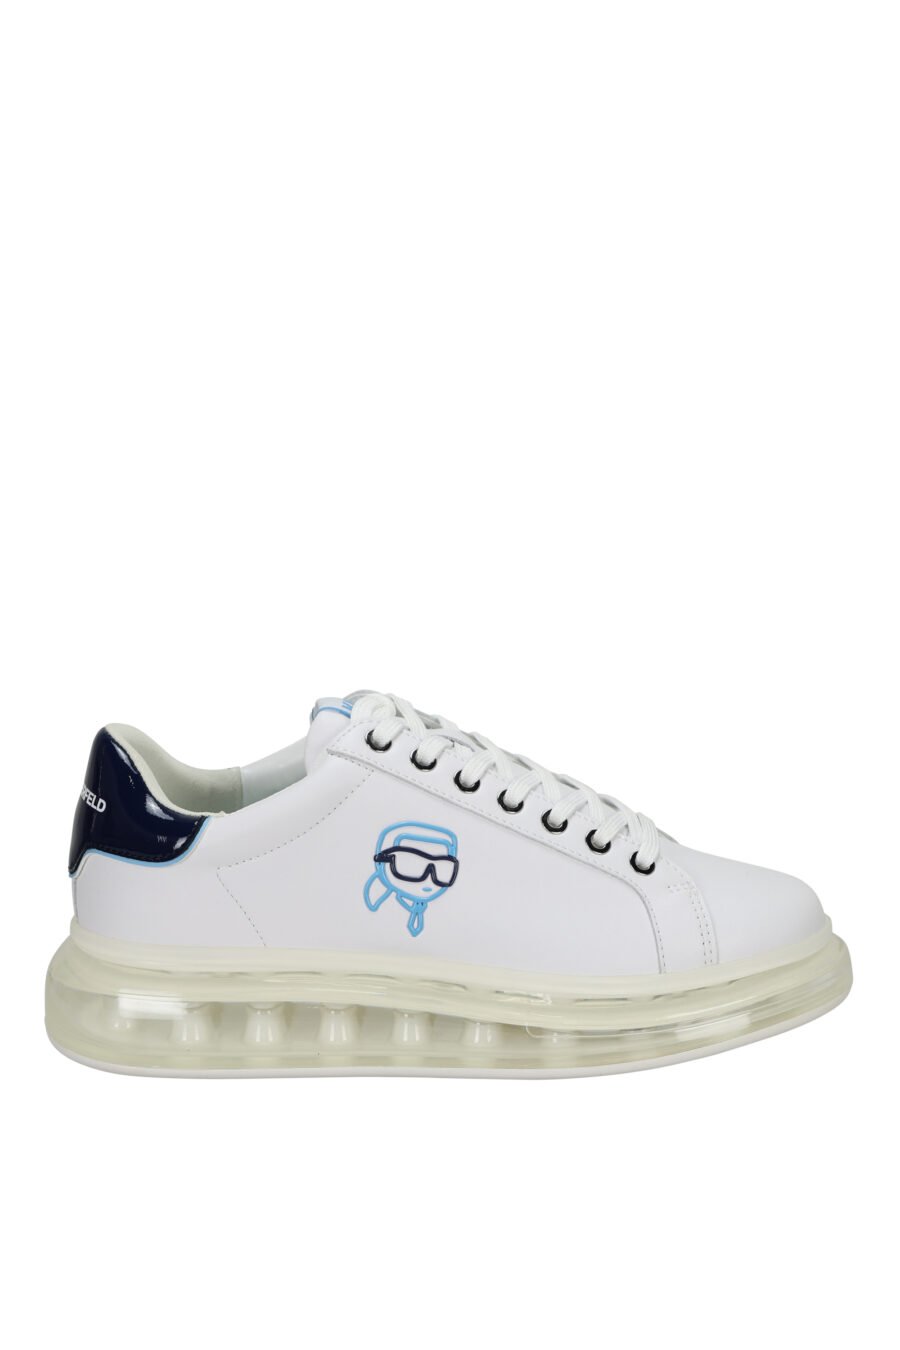 Zapatillas blancas "kapri fushion" con plataforma transparente y minilogo en contorno azul - 5059529396144